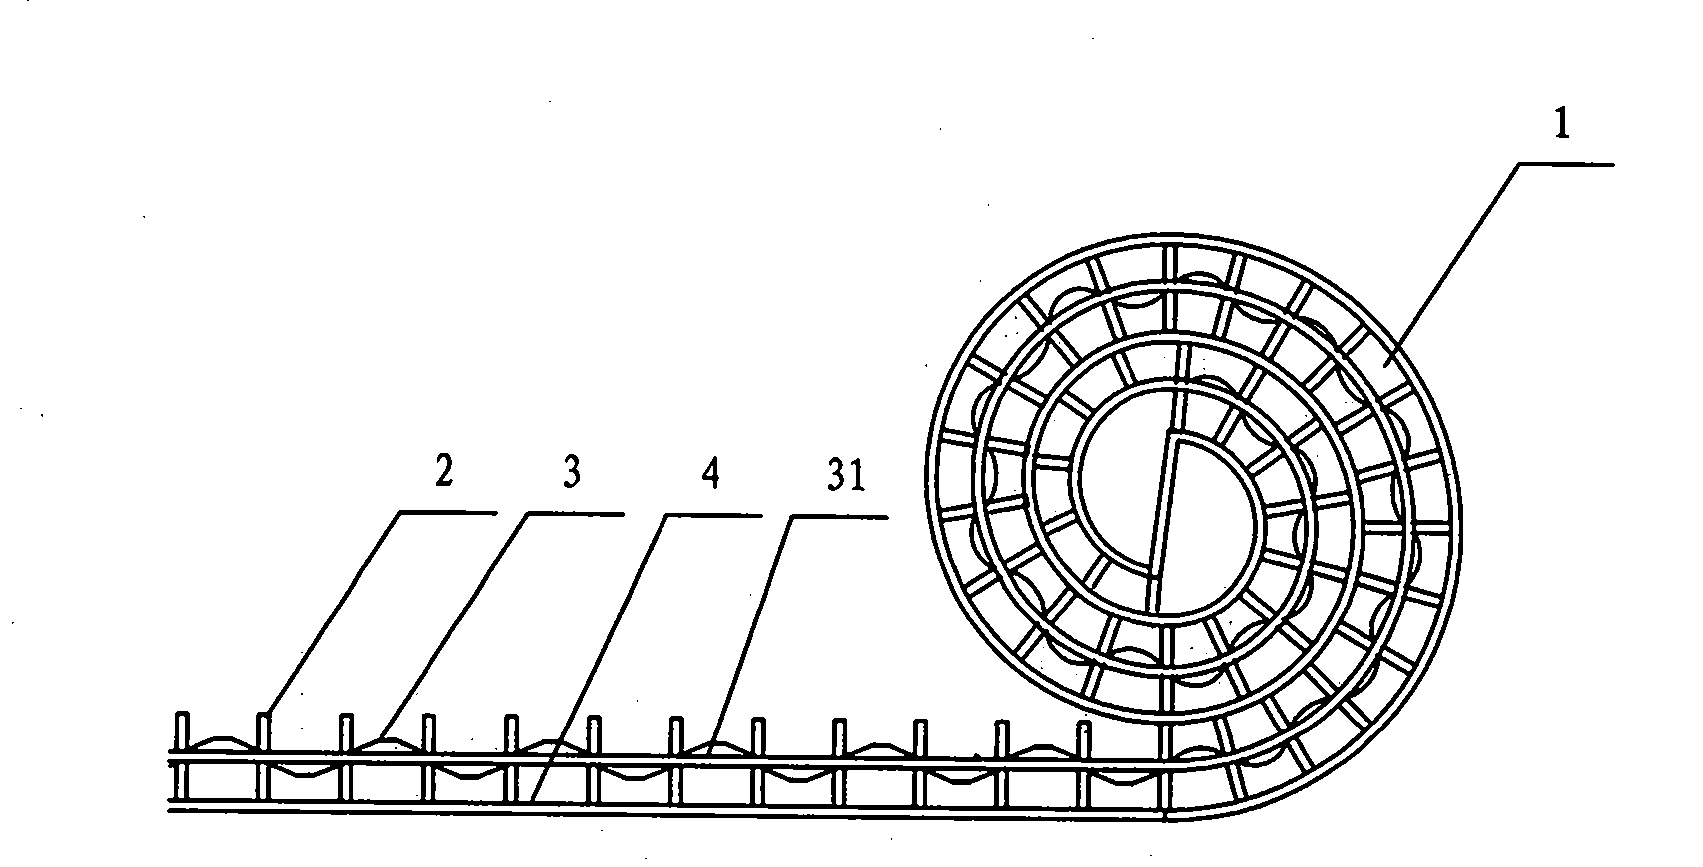 Corrugated spiral plate heat exchanger